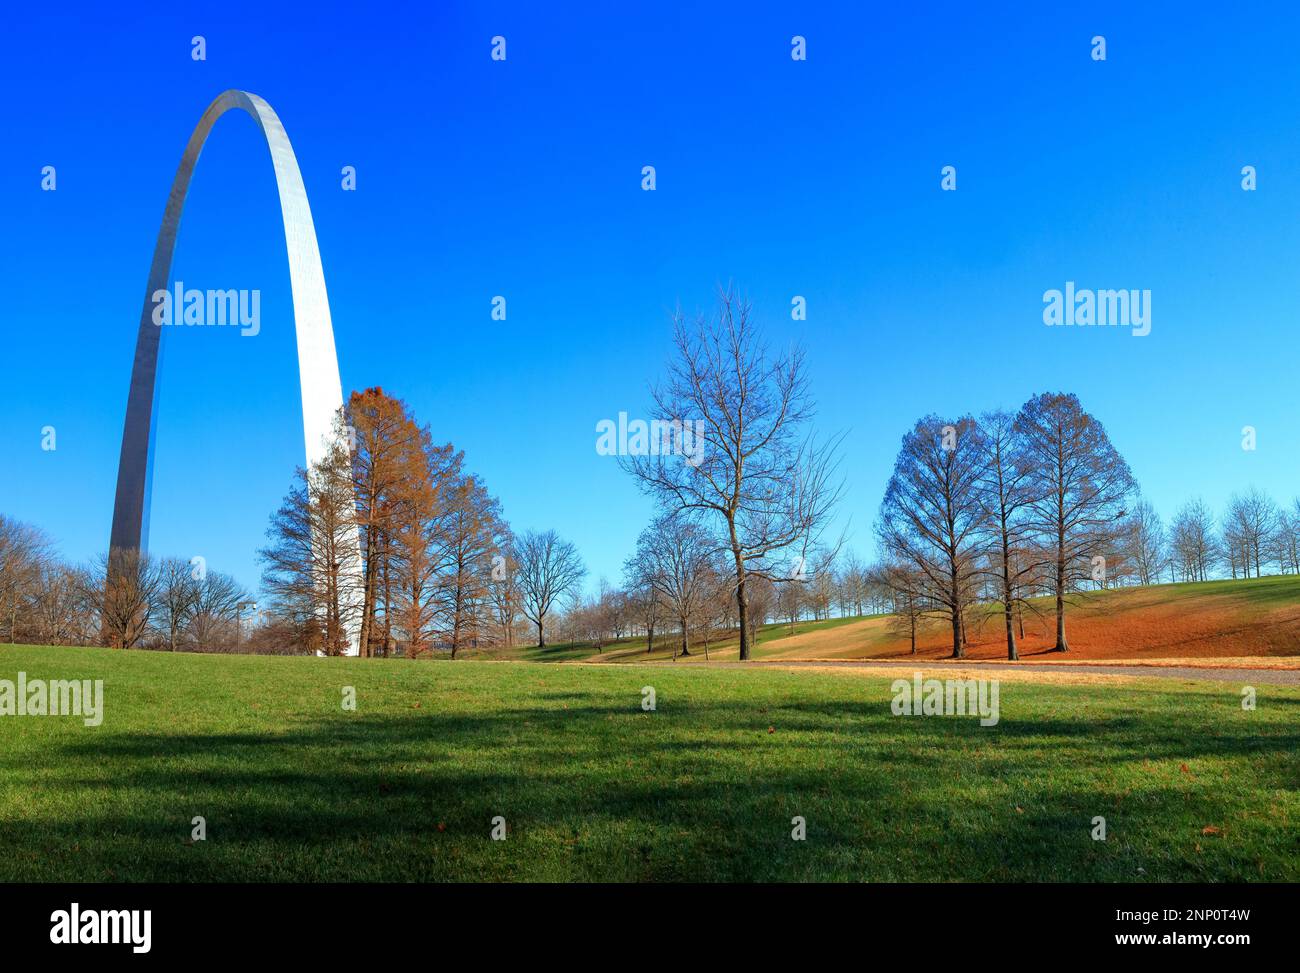 City and Gateway Arch, Saint Louis, Missouri, USA Stock Photo